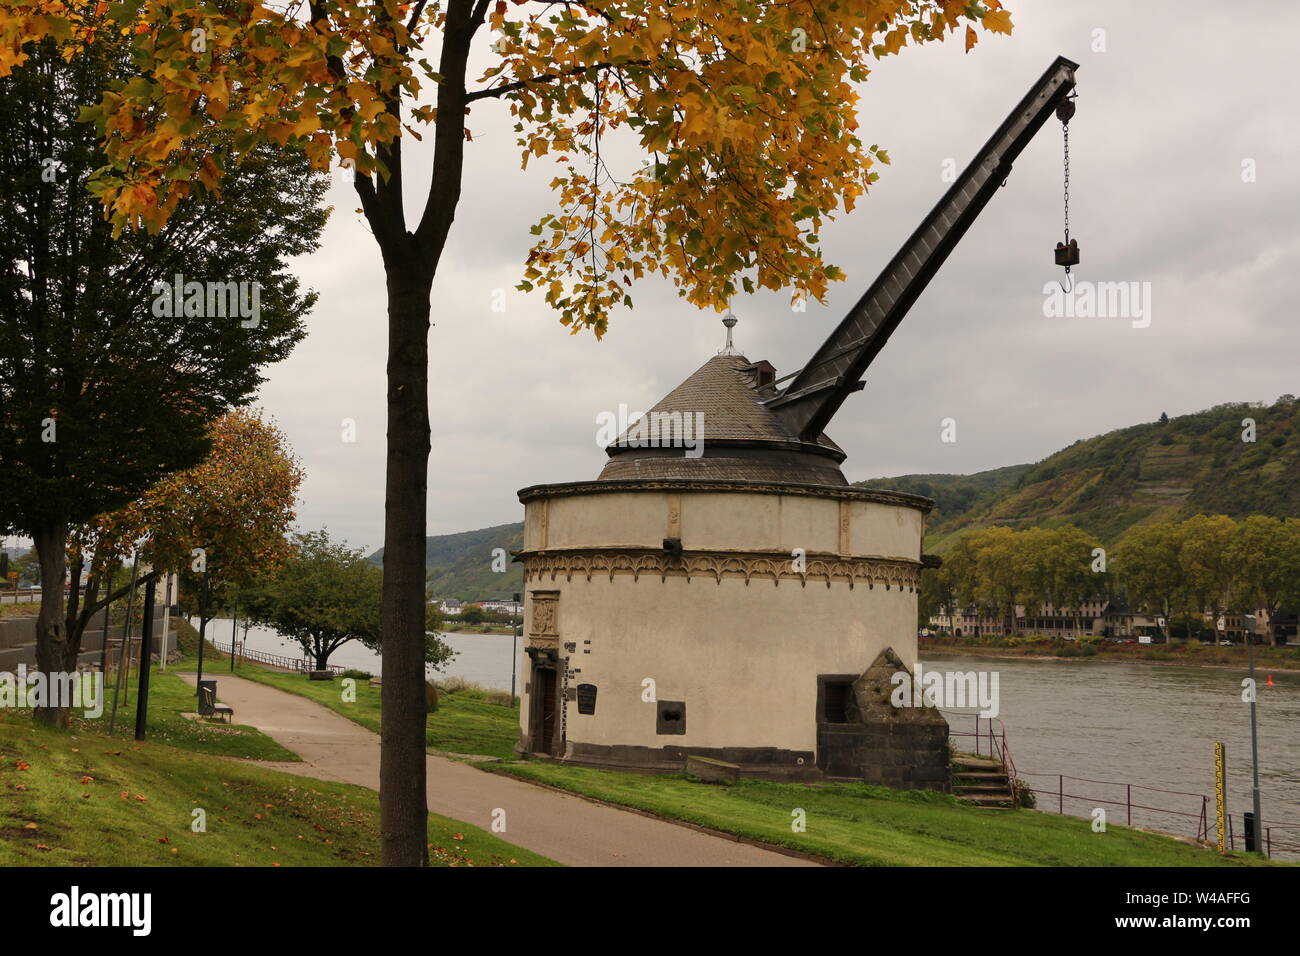 Blick auf den Rhein bei Andernach in Rheinland-Pfalz Stock Photo